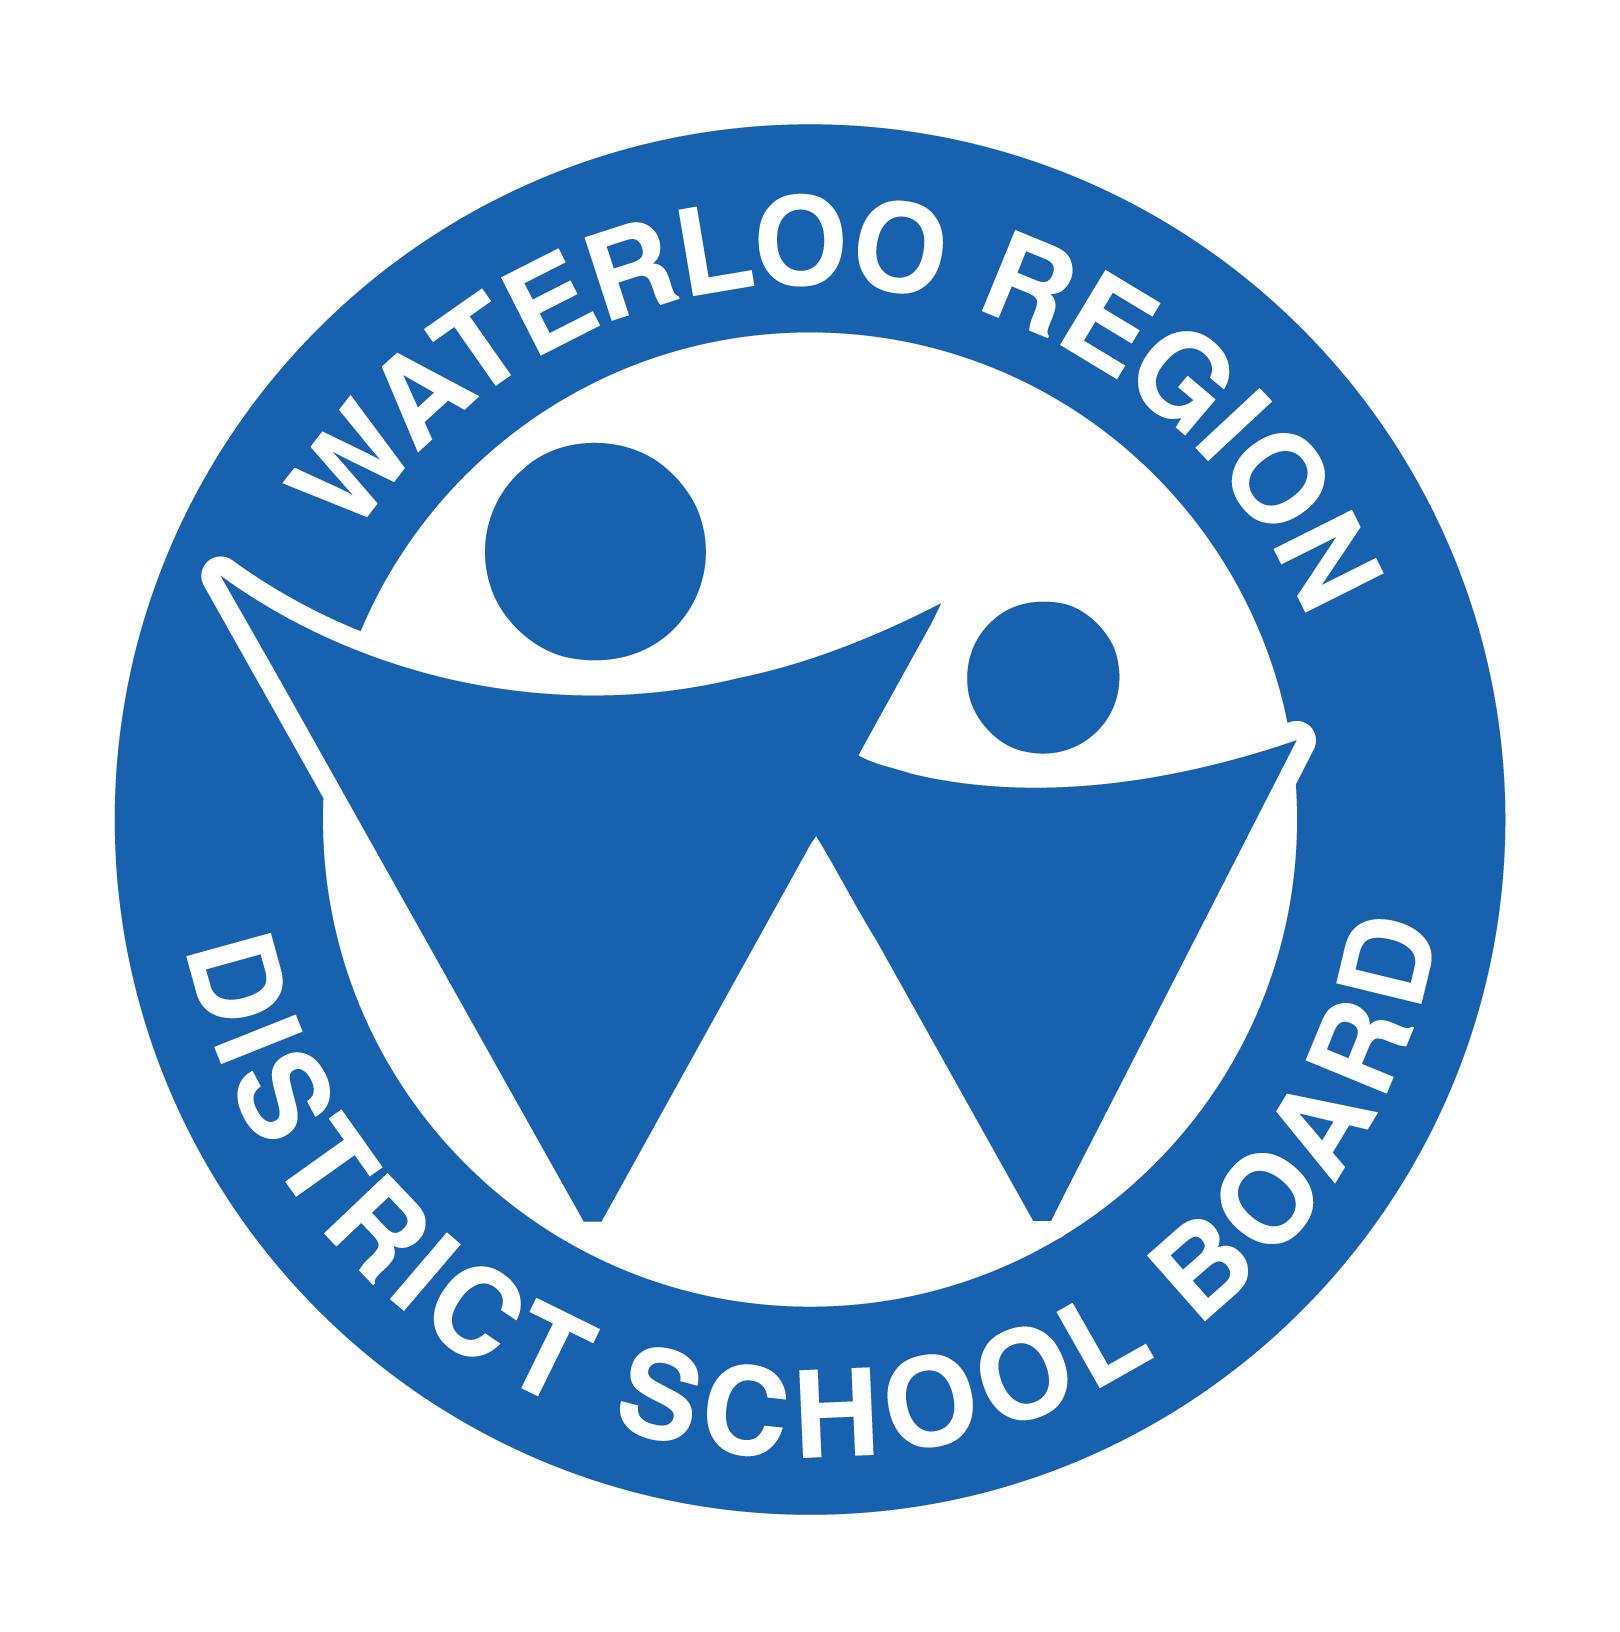 Waterloo Region District School Board logo